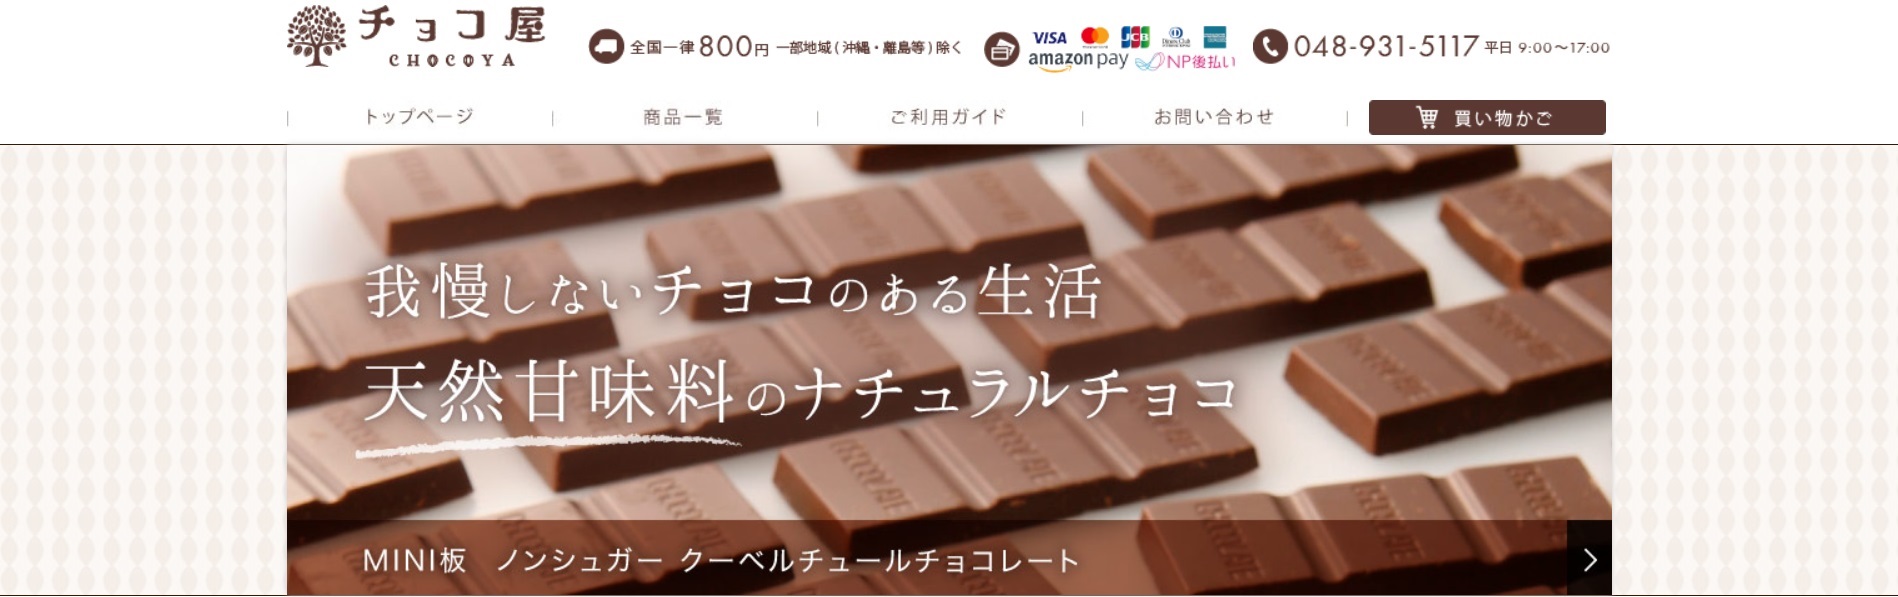 チョコ屋のホームページの画像